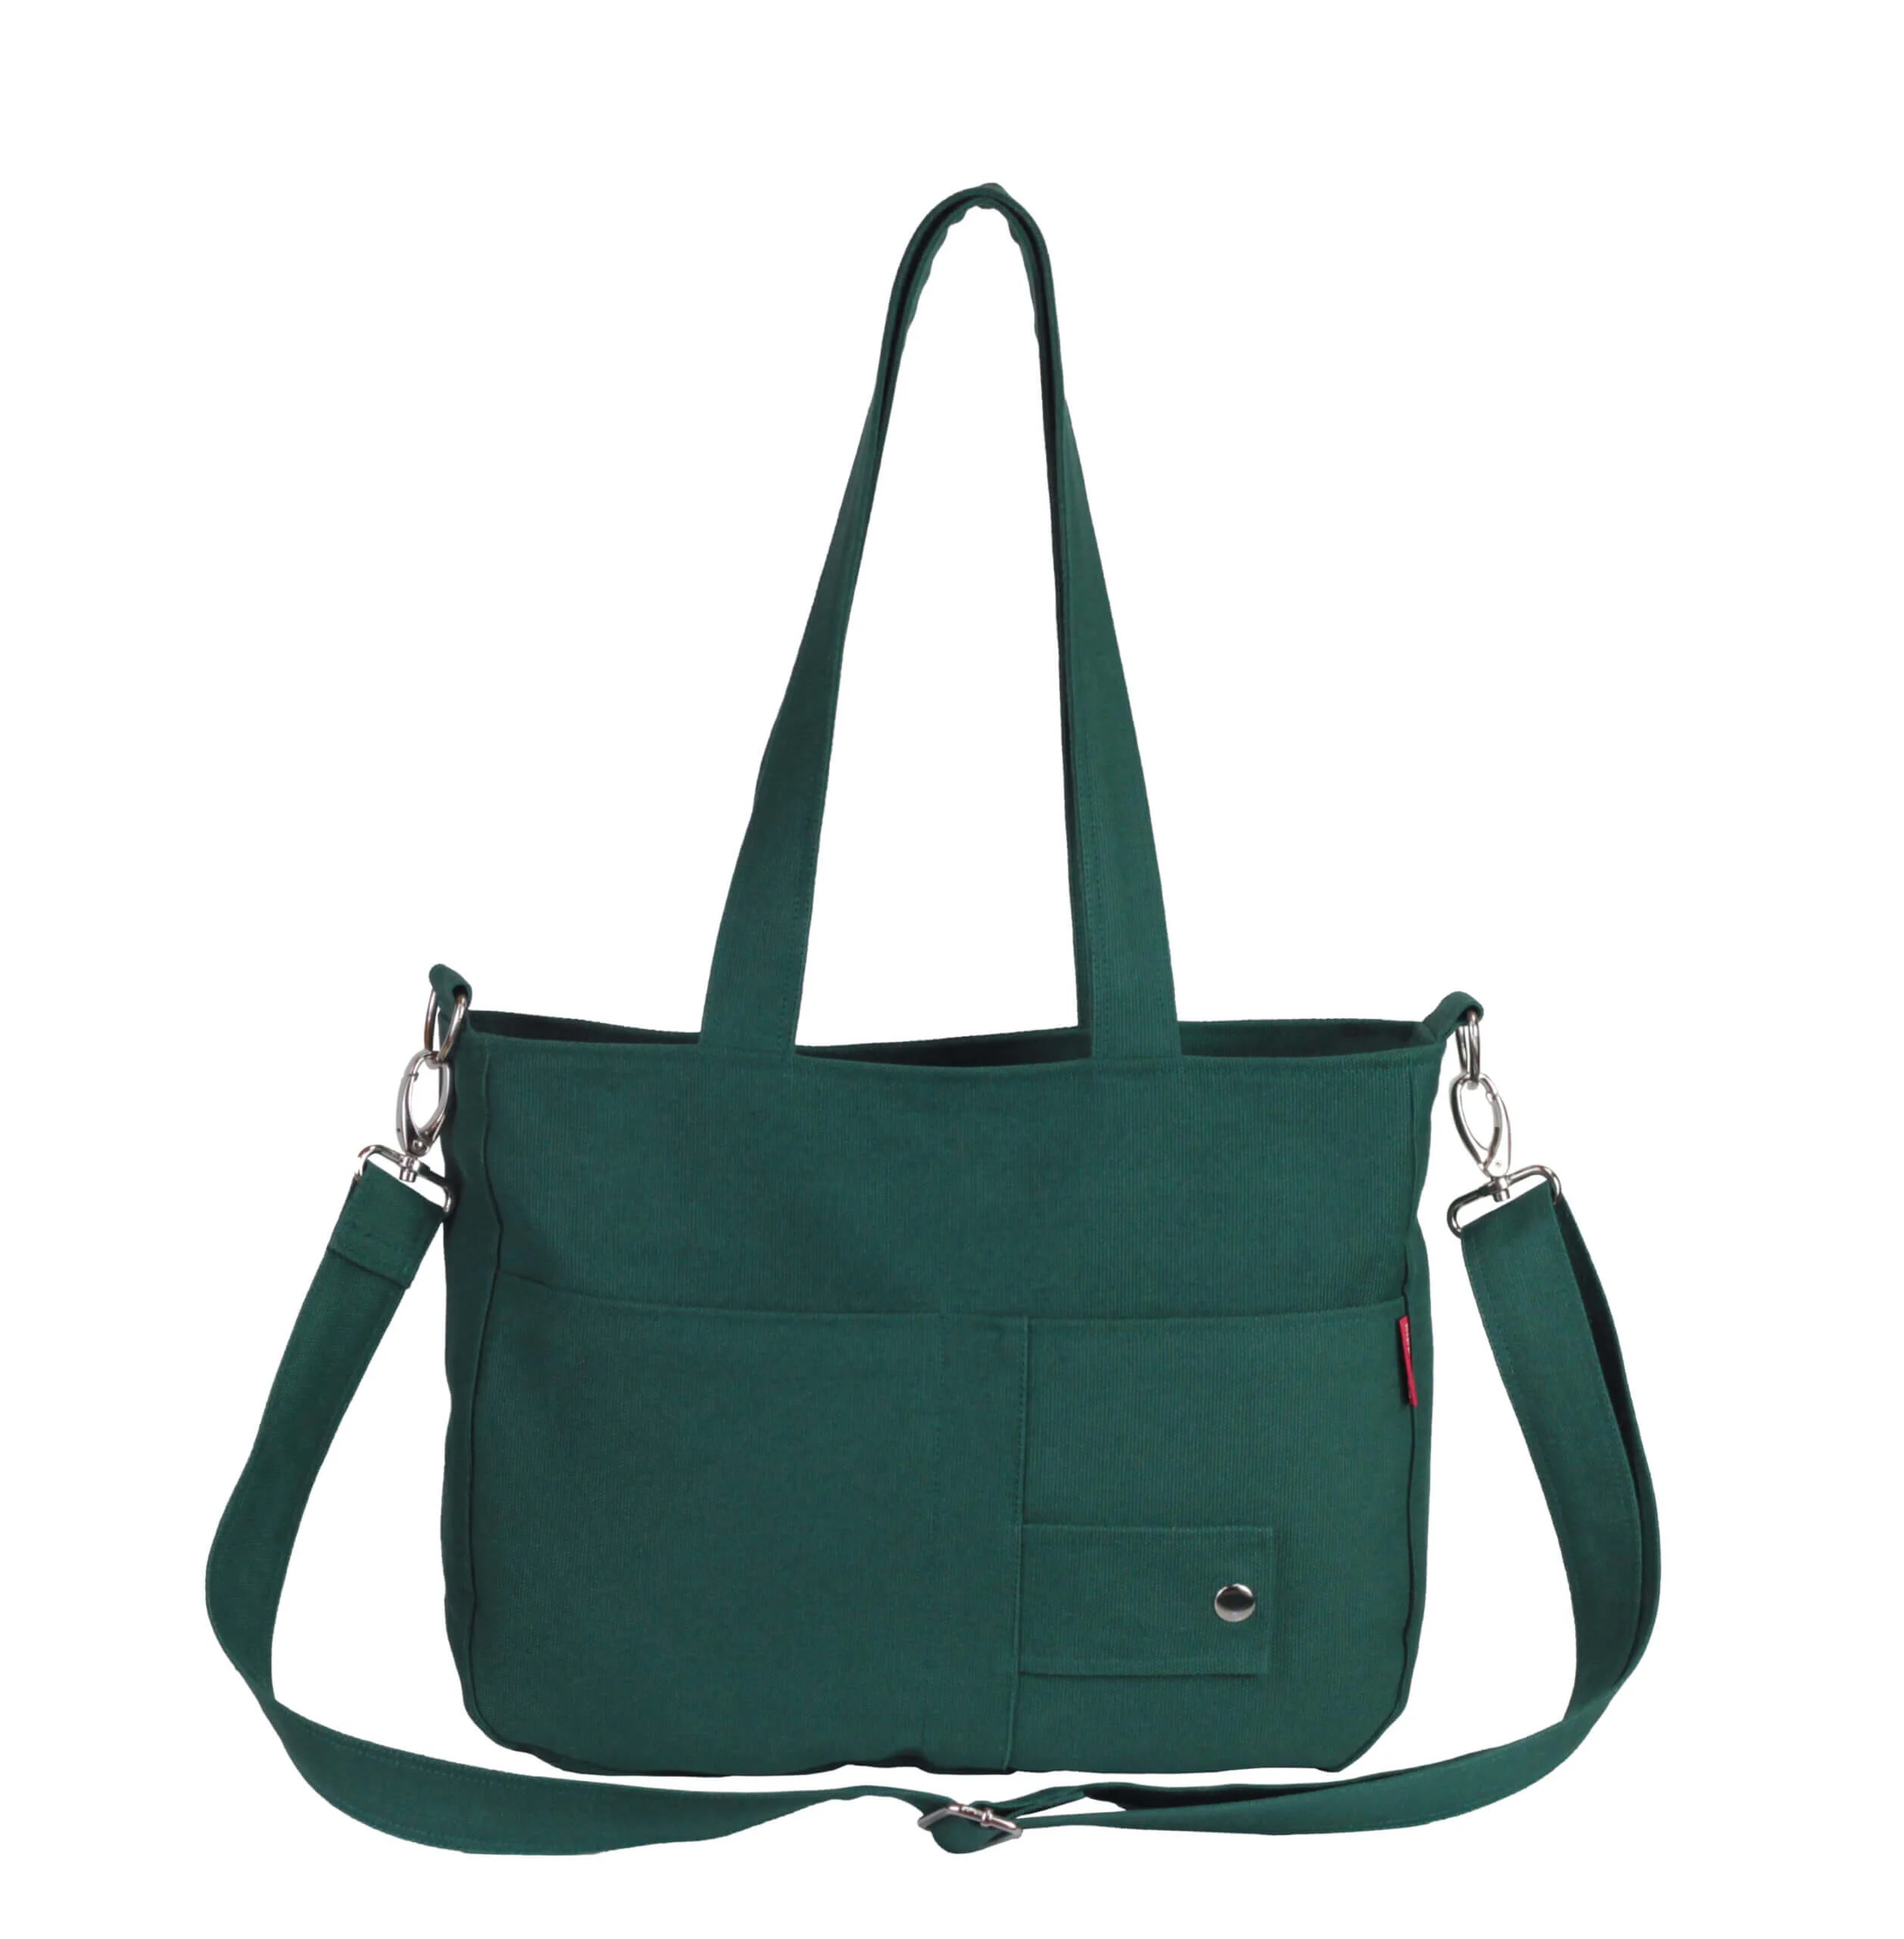 Lands' End Purse Green Suede Hobo Shoulder Bag Handbag Lined Brown Leather  Trim | eBay